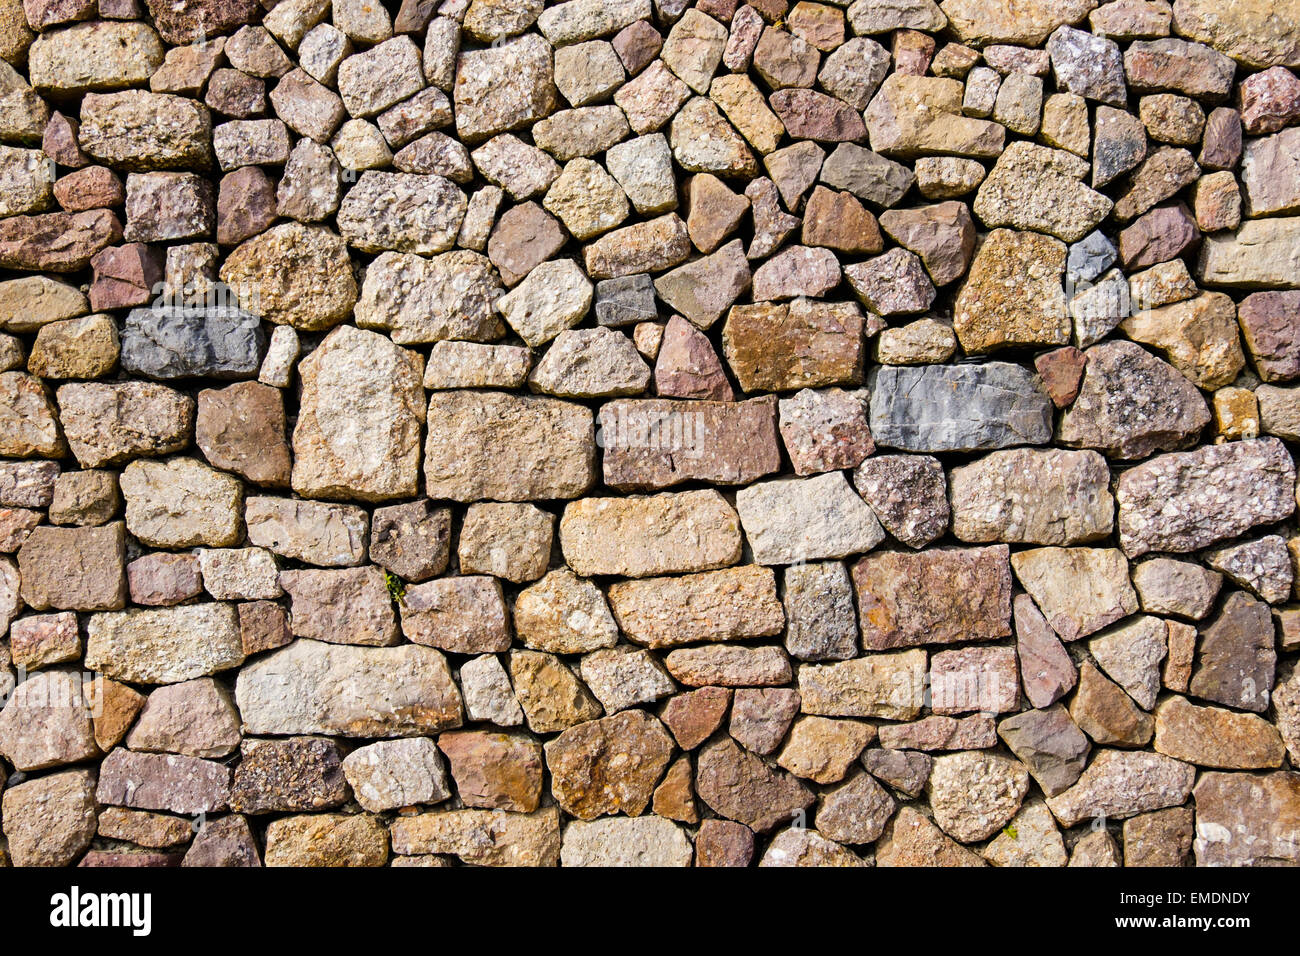 Pierres de différentes formes, tailles et couleurs dans un mur en pierre sèche sur un bâtiment. Royaume-uni, Angleterre Banque D'Images